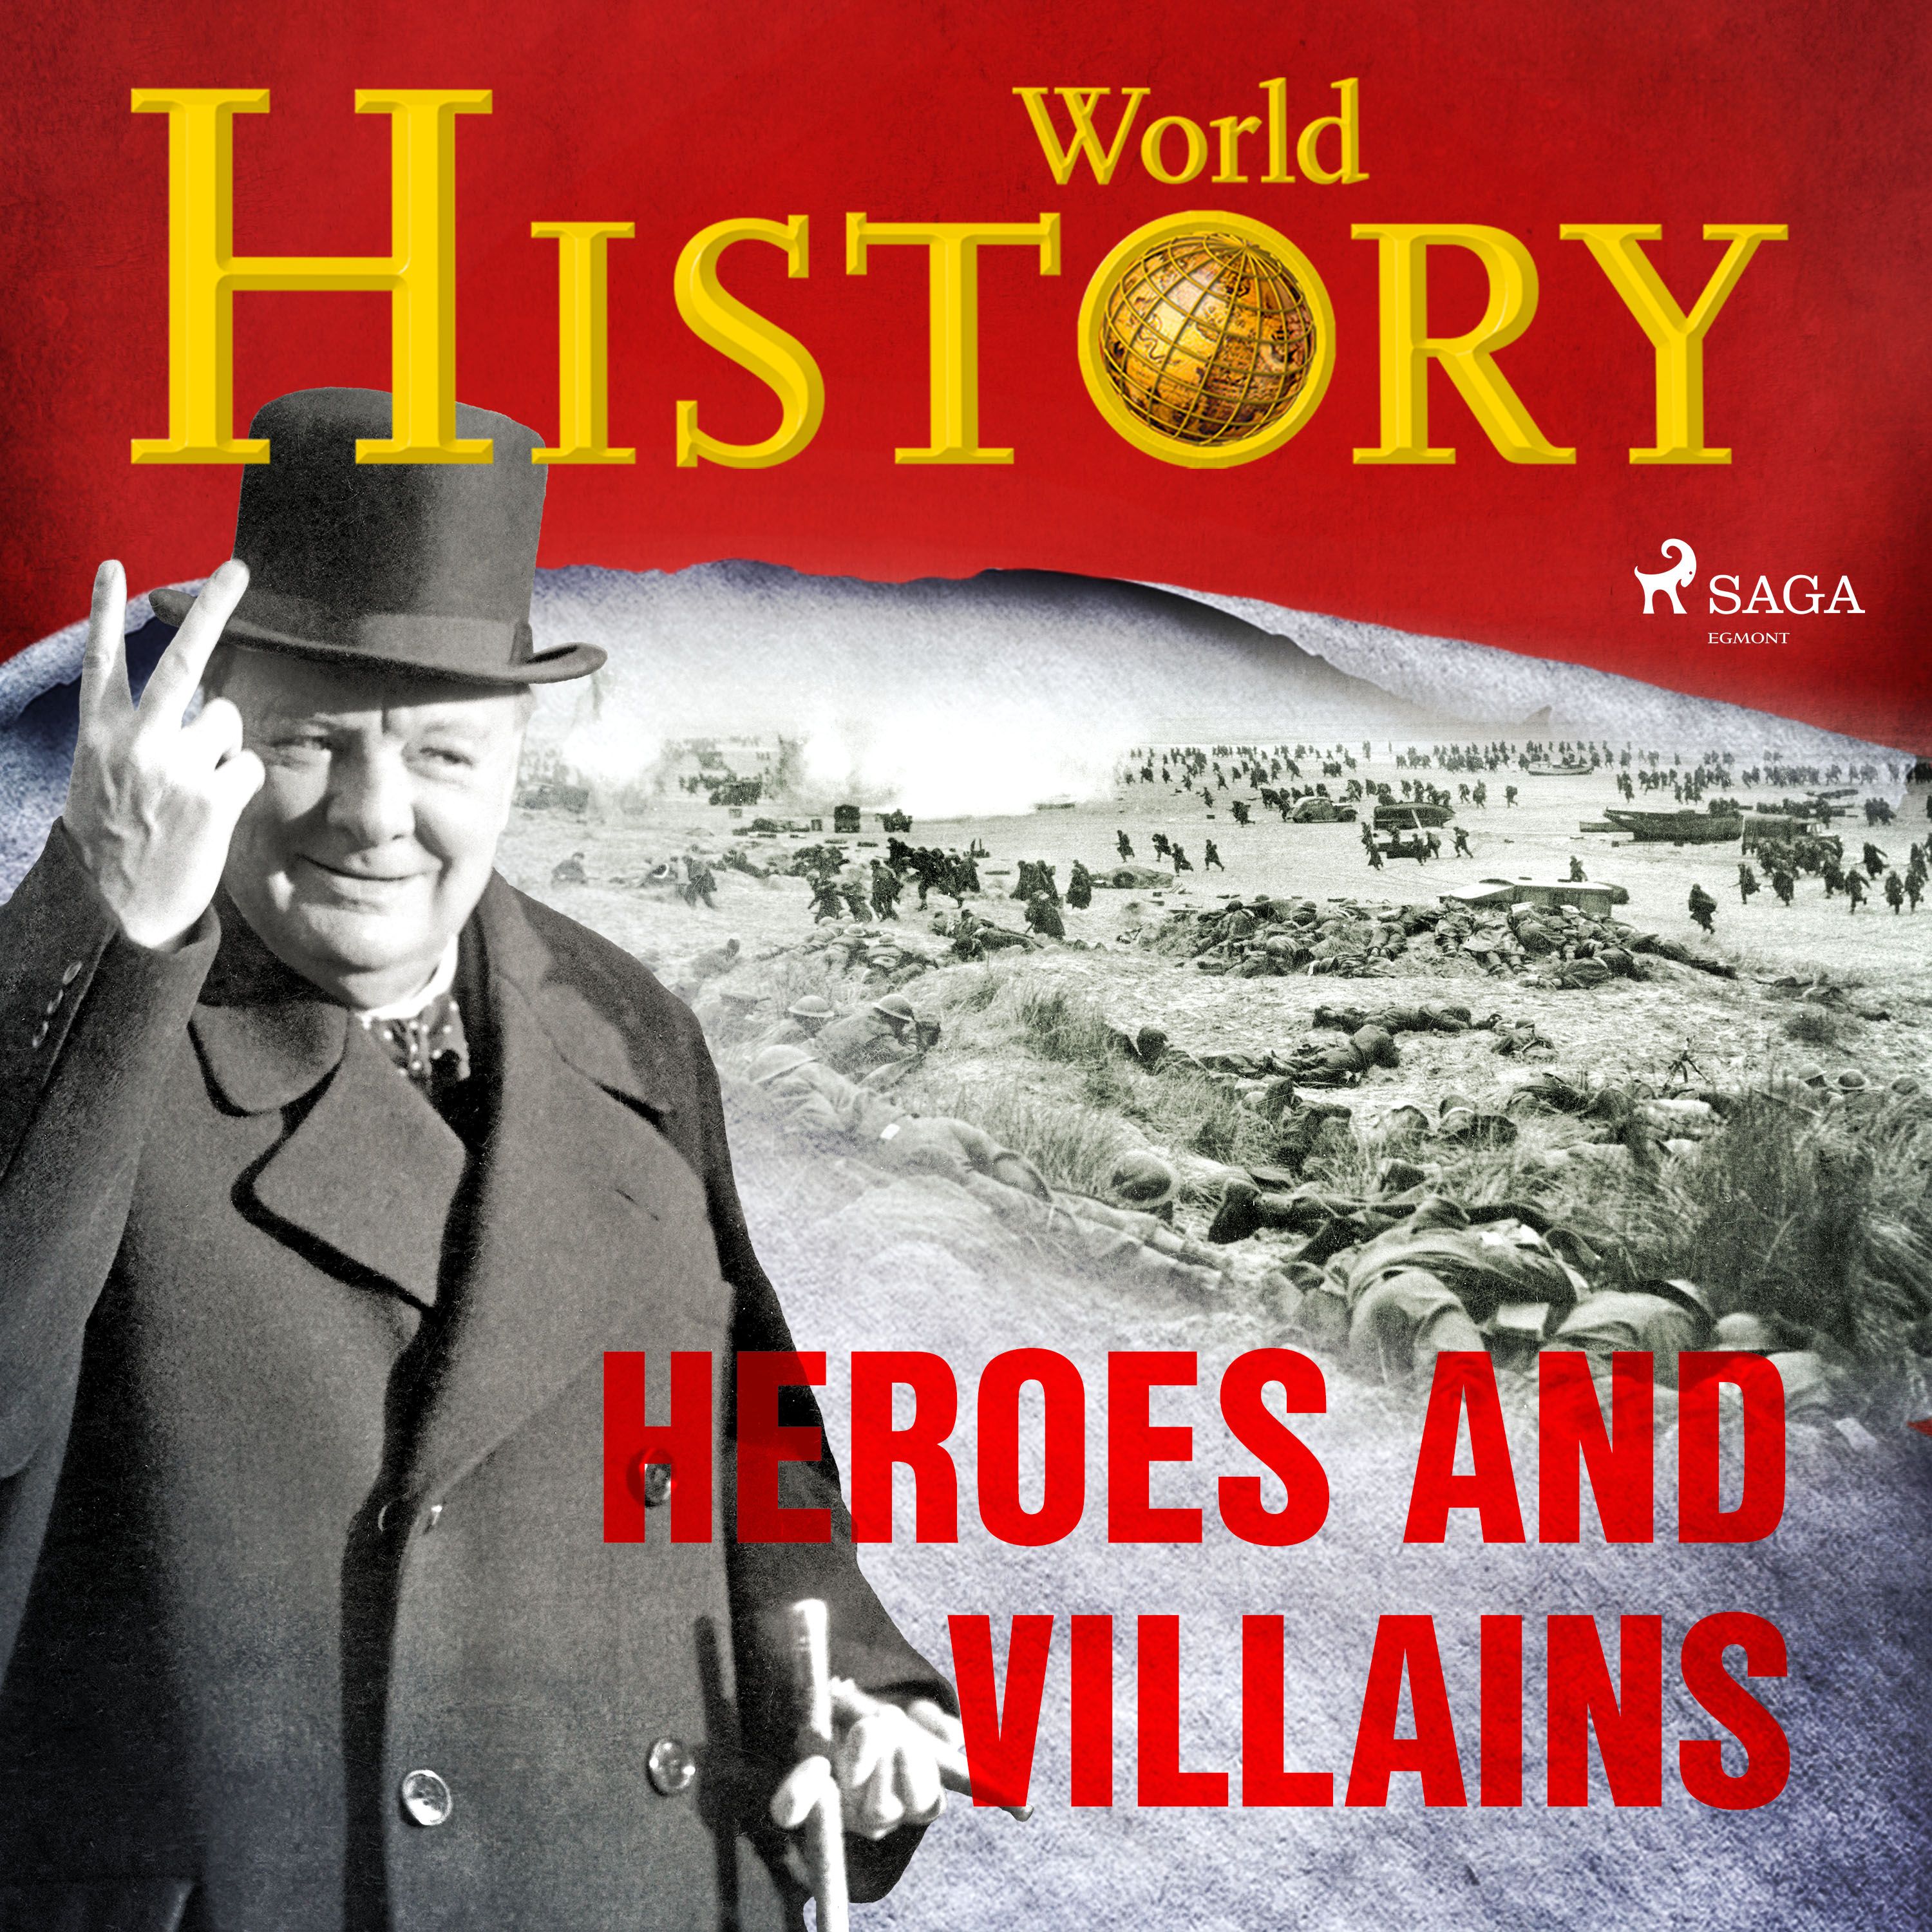 Heroes and Villains, ljudbok av World History